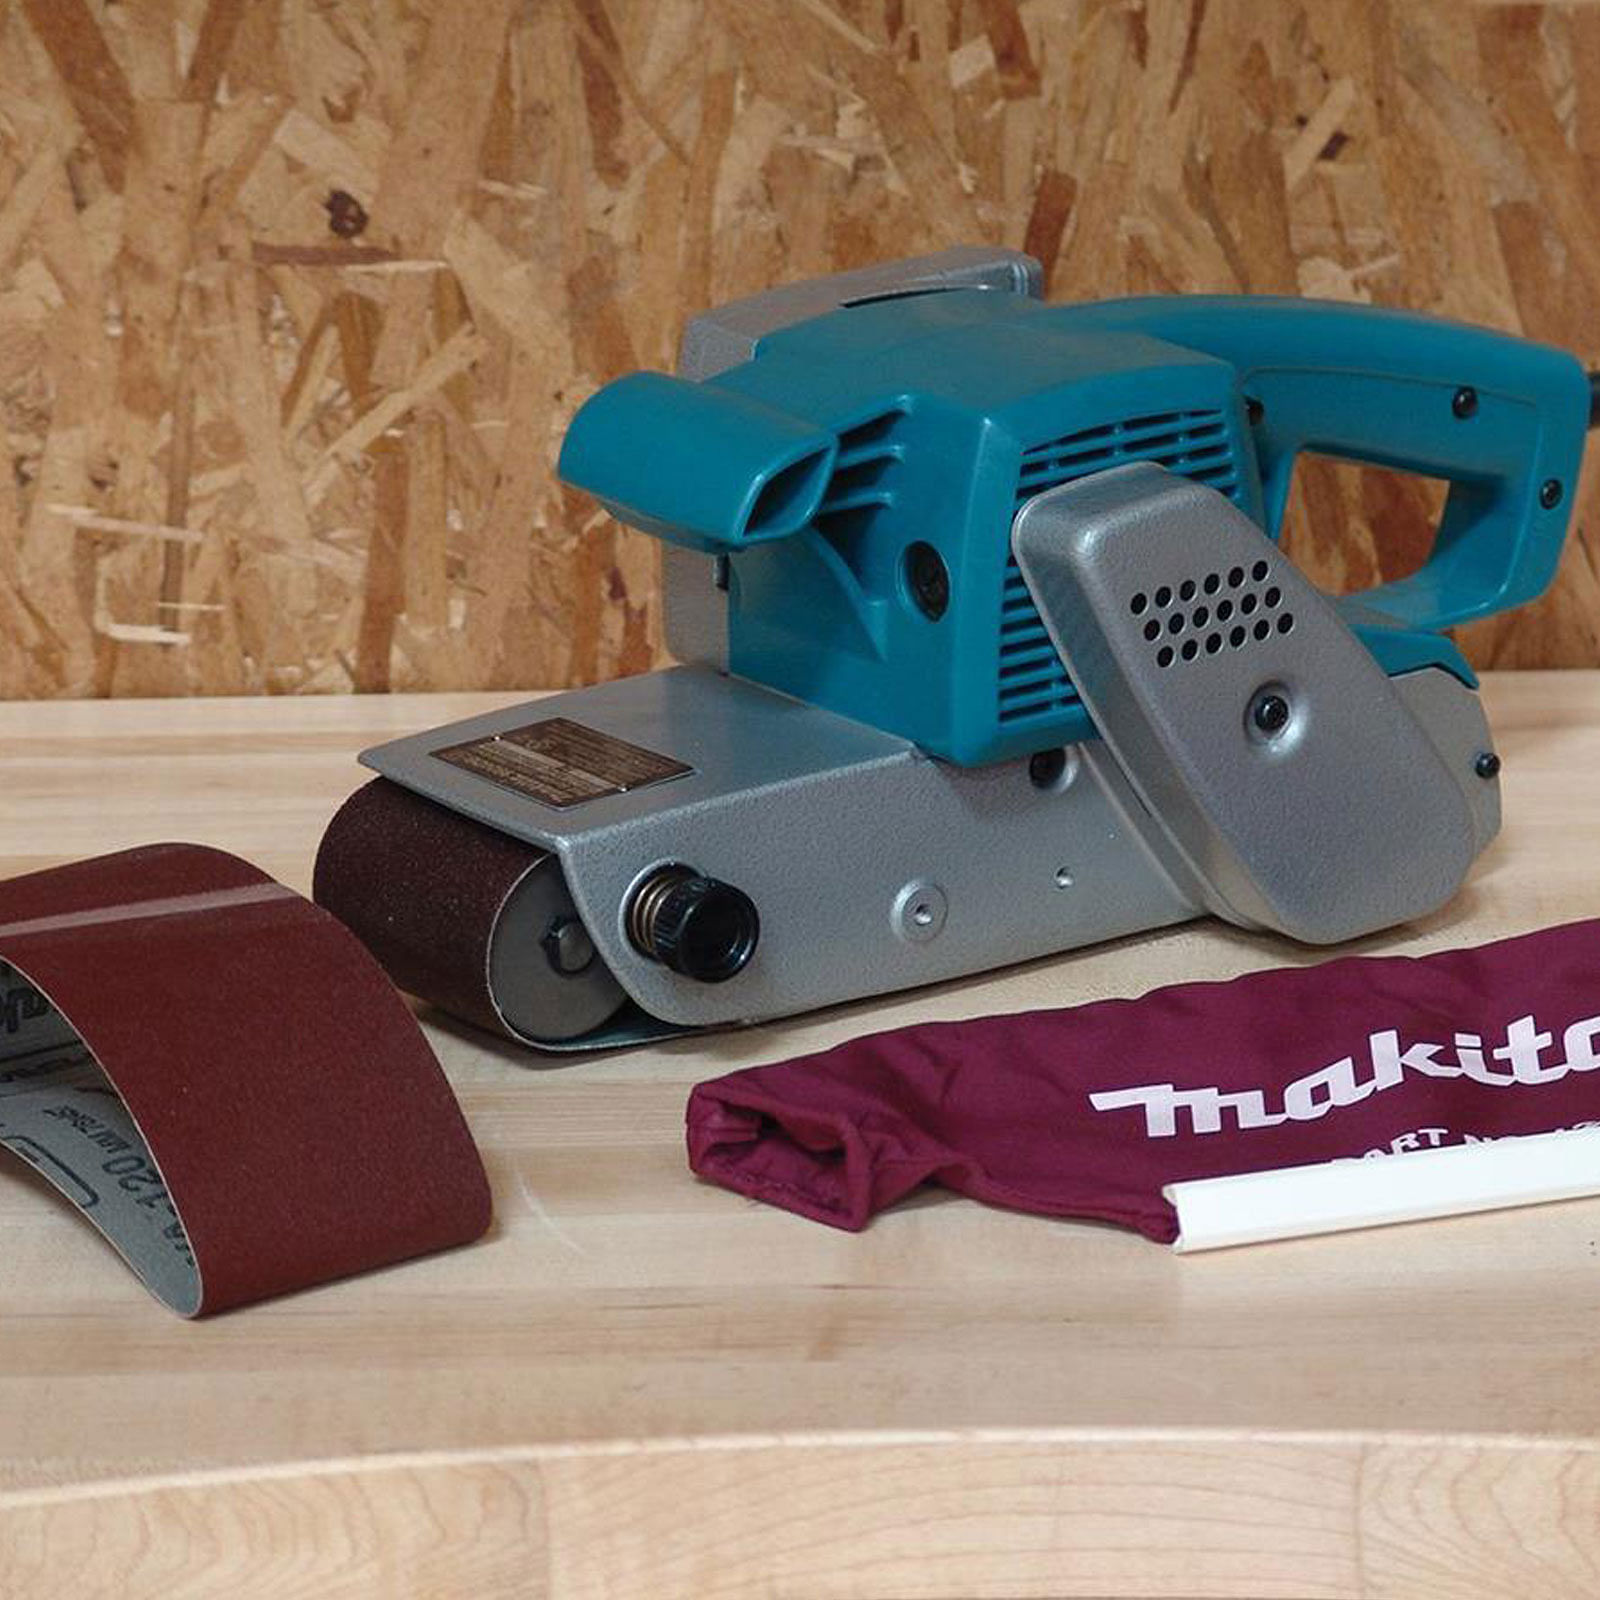 30 Pack 40 Grits Belt Sander Tool for Woodworking 1/2 Inch x 18 Inch Sanding Belts Aluminum Oxide Sanding Belt Metal Polishing 